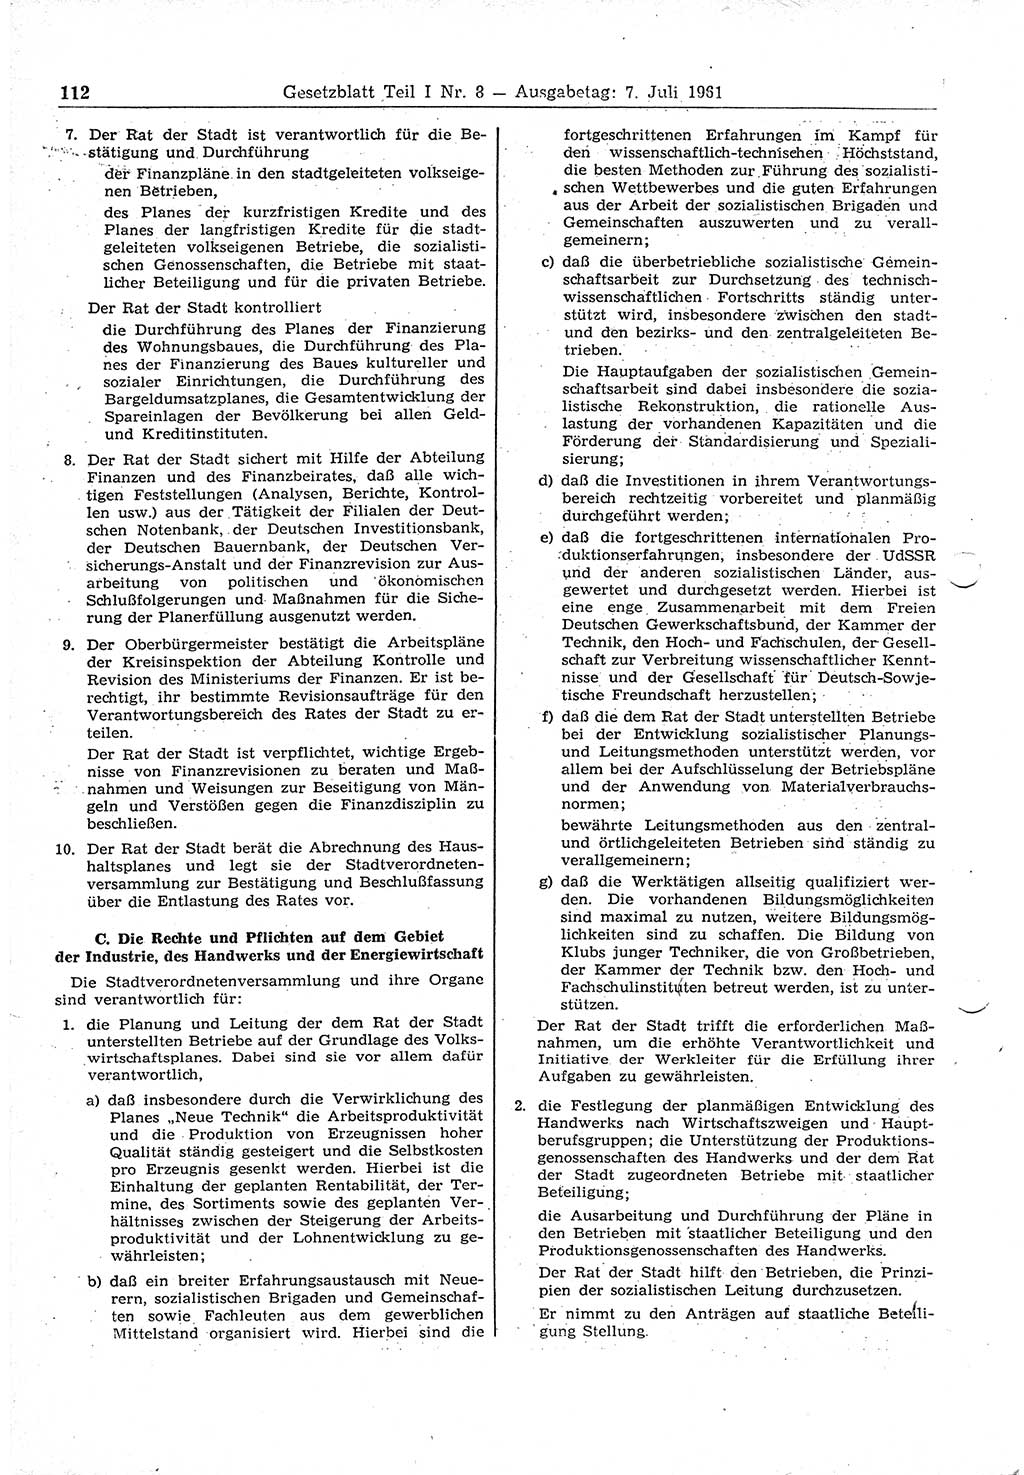 Gesetzblatt (GBl.) der Deutschen Demokratischen Republik (DDR) Teil Ⅰ 1961, Seite 112 (GBl. DDR Ⅰ 1961, S. 112)